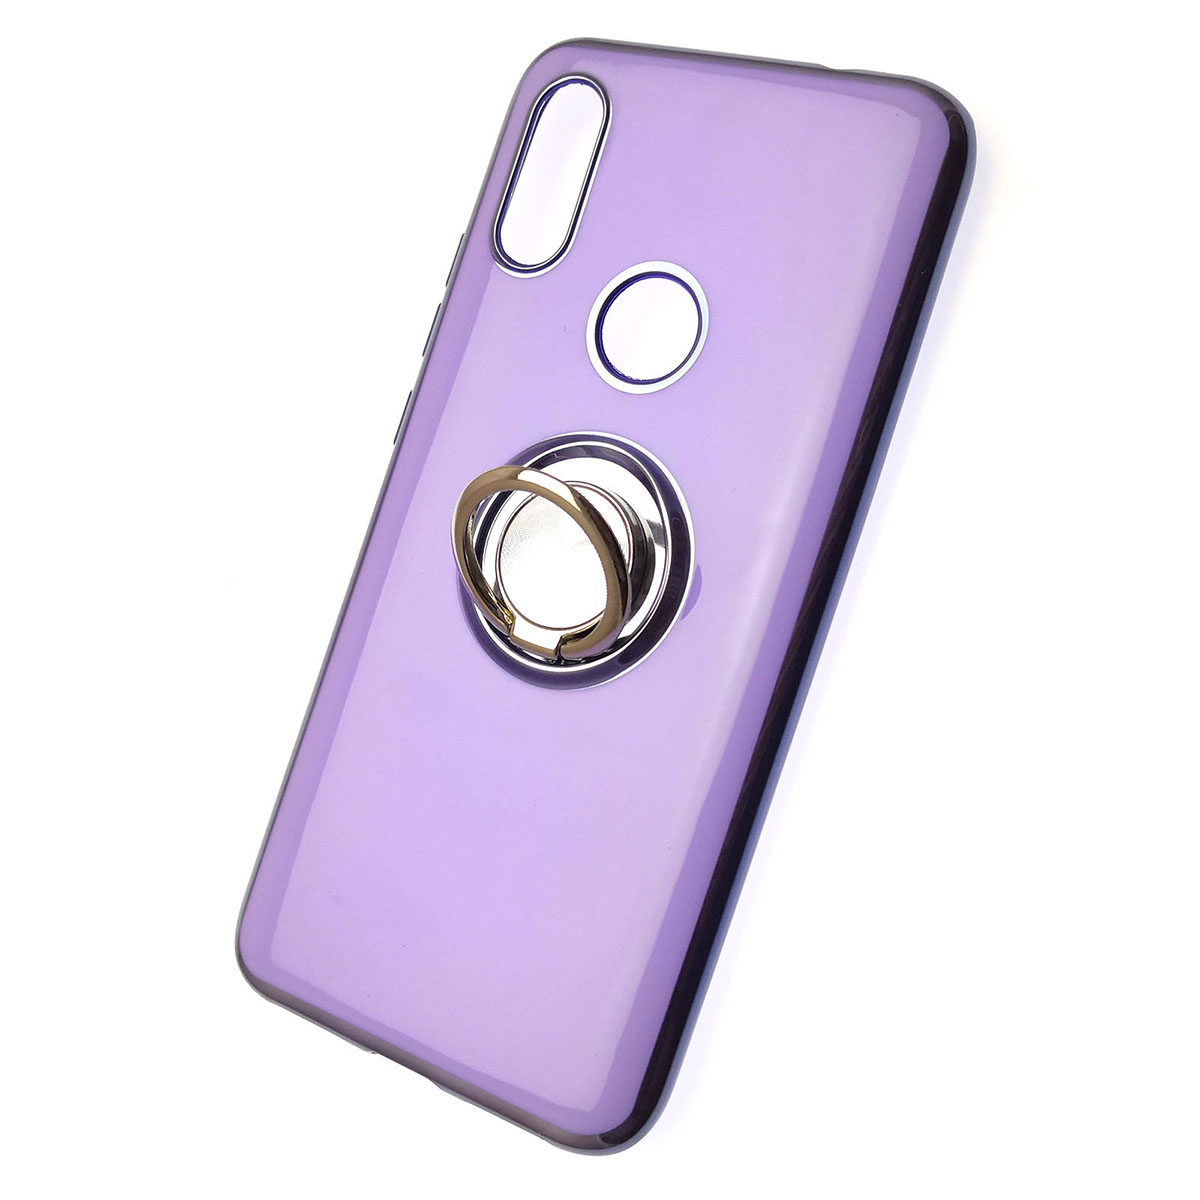 Чехол накладка для XIAOMI Redmi 7, силикон, кольцо держатель, цвет светло фиолетовый.